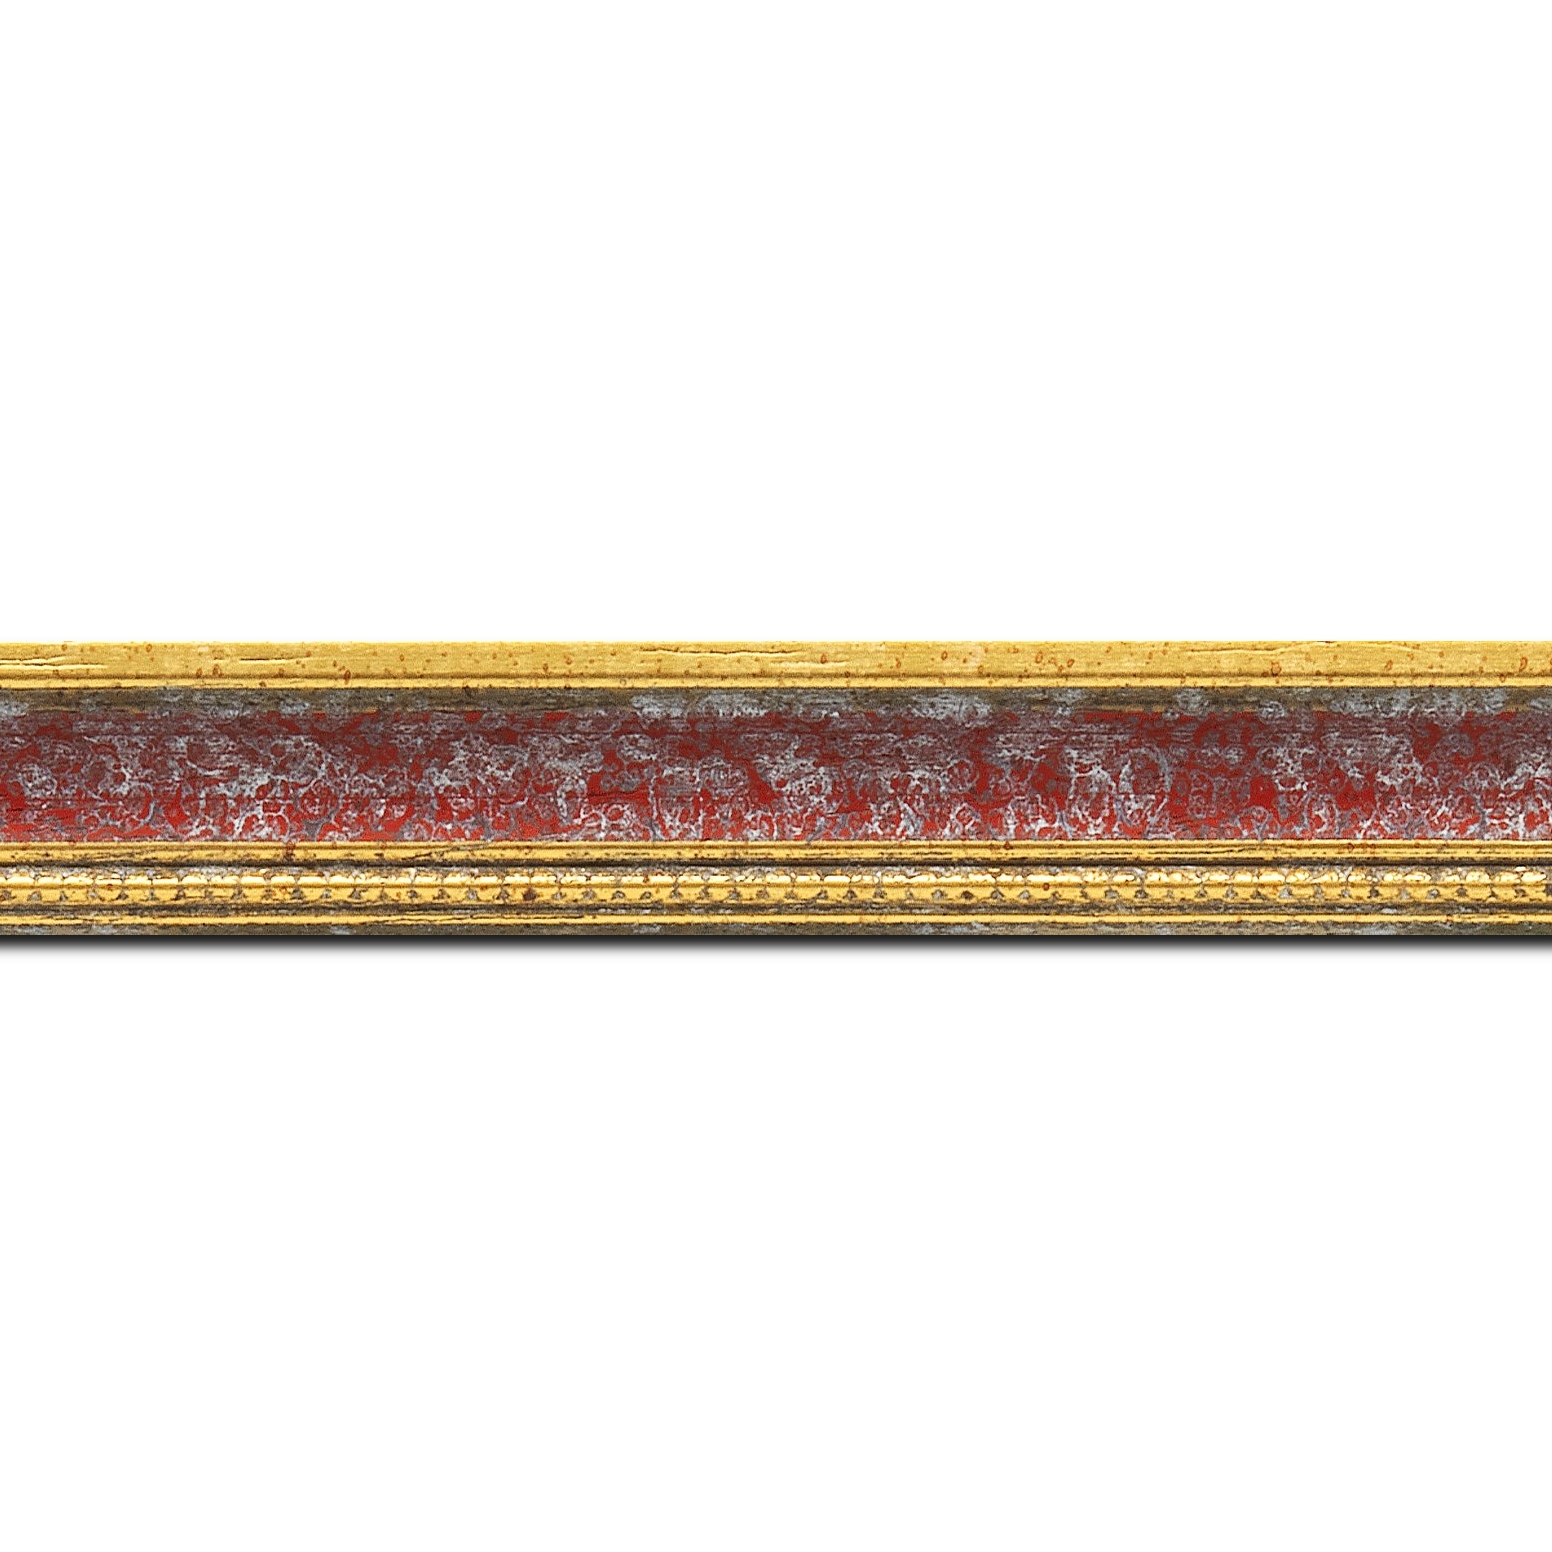 Pack par 12m, bois profil incurvé largeur 2.4cm  or antique gorge rouge cerise filet perle or(longueur baguette pouvant varier entre 2.40m et 3m selon arrivage des bois)